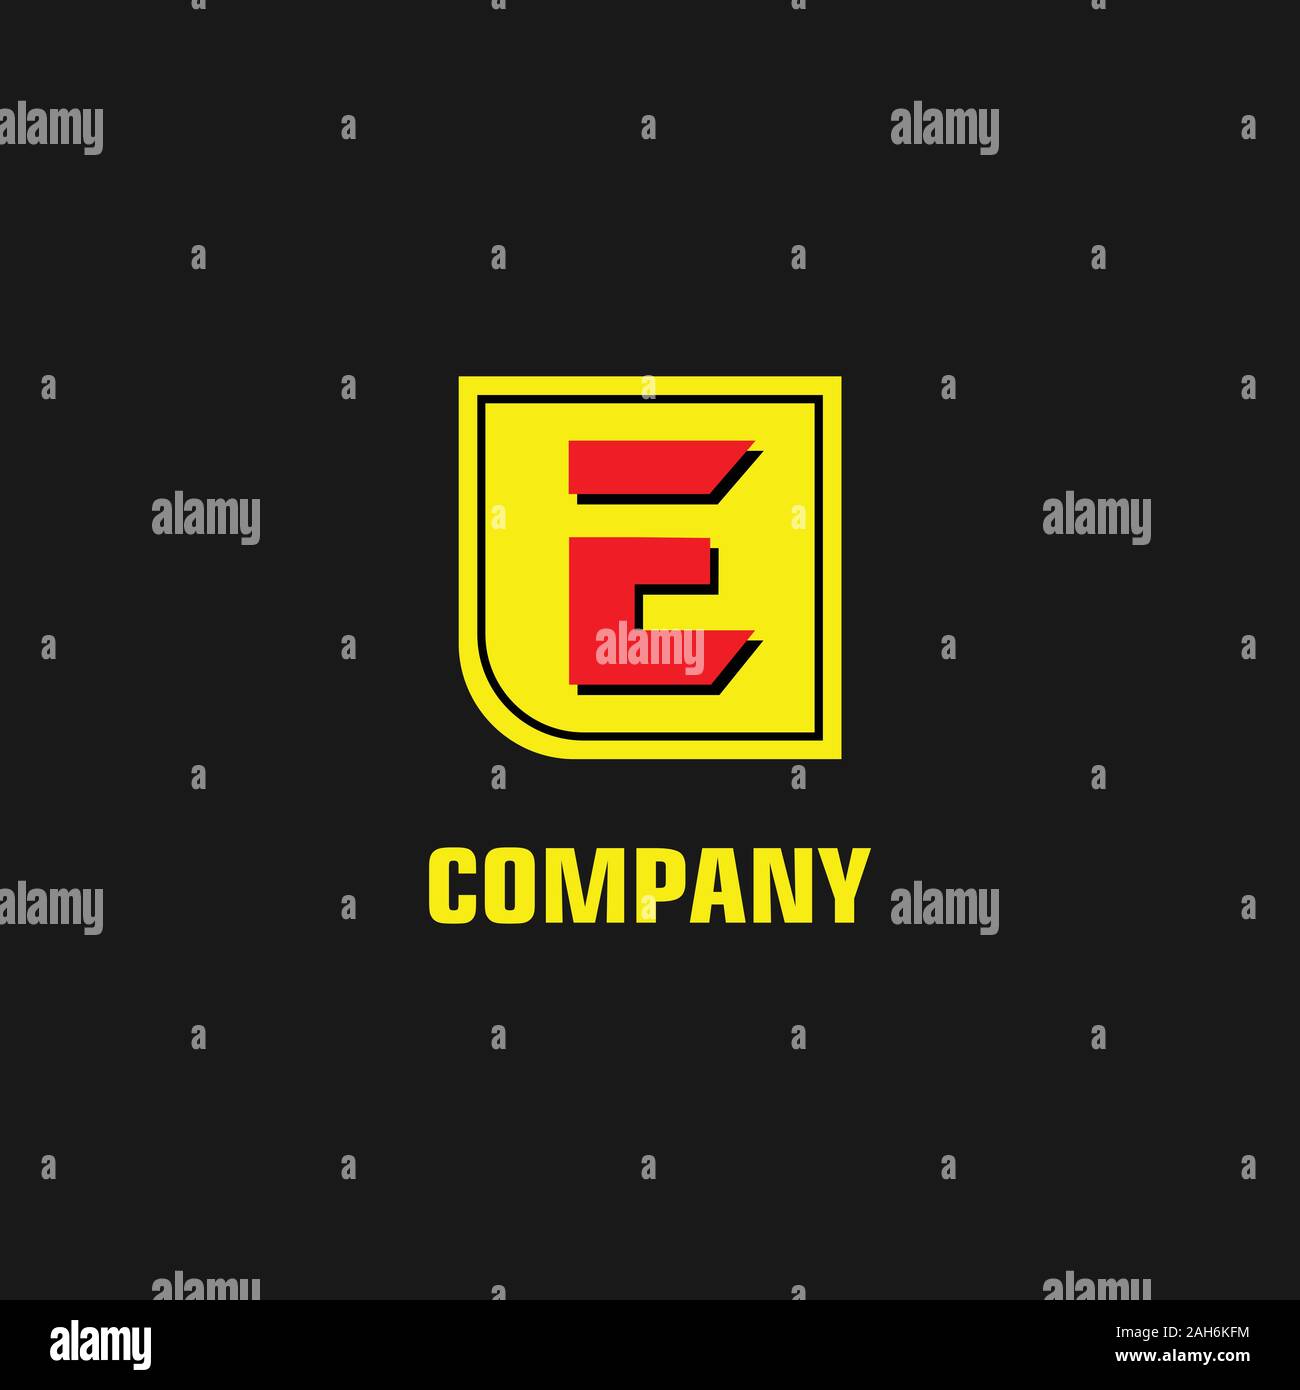 Logo Letter E được thiết kế đơn giản nhưng tinh tế, mang lại sự sang trọng và chuyên nghiệp. Hãy xem hình ảnh liên quan để khám phá thêm về quy trình thiết kế và ý nghĩa của Logo Letter E trong kinh doanh và thương hiệu.